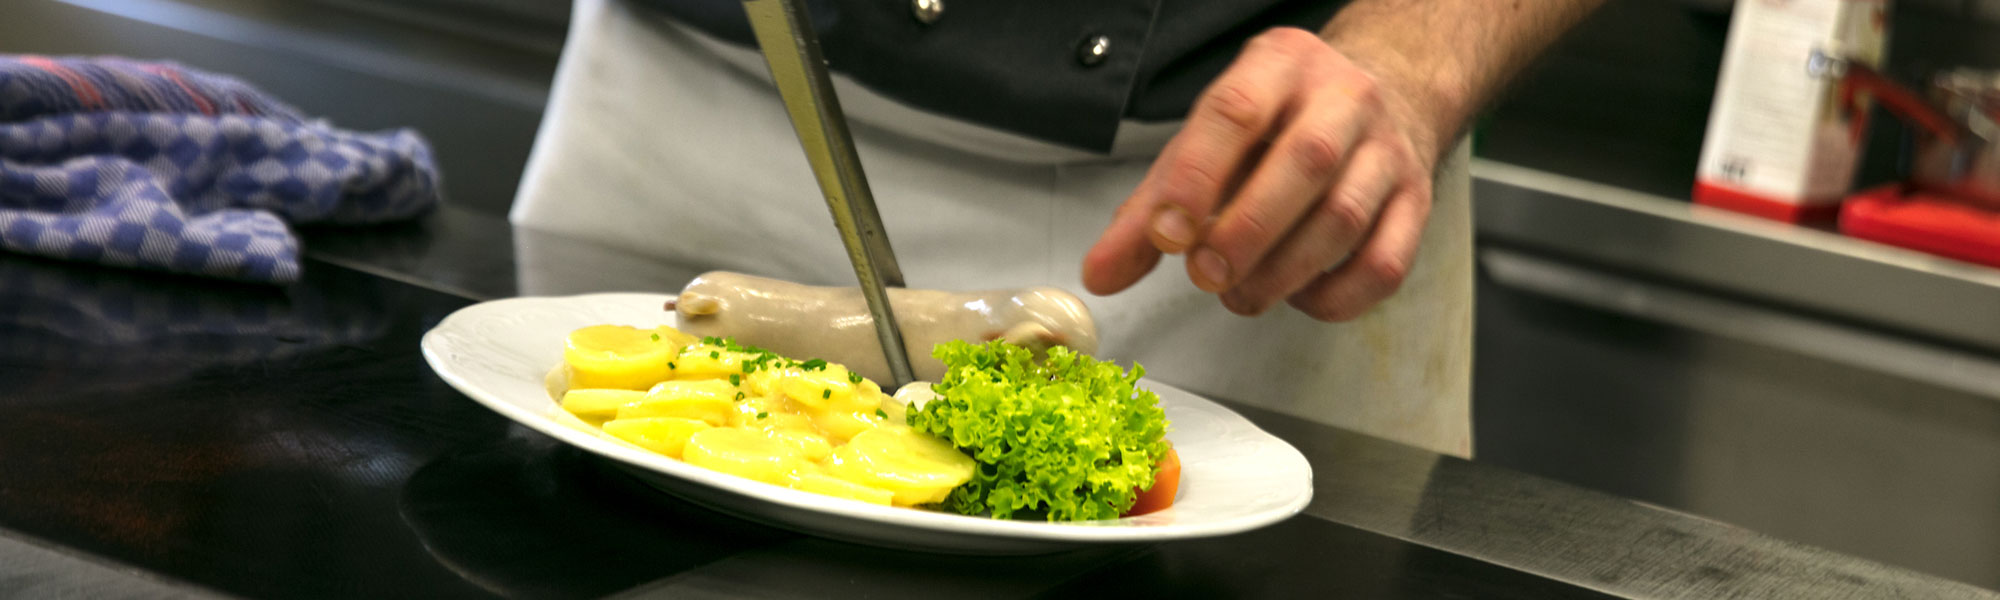 Header-Ueber-uns-Jobs-Kueche-Siedwurst-Kartoffelsalat